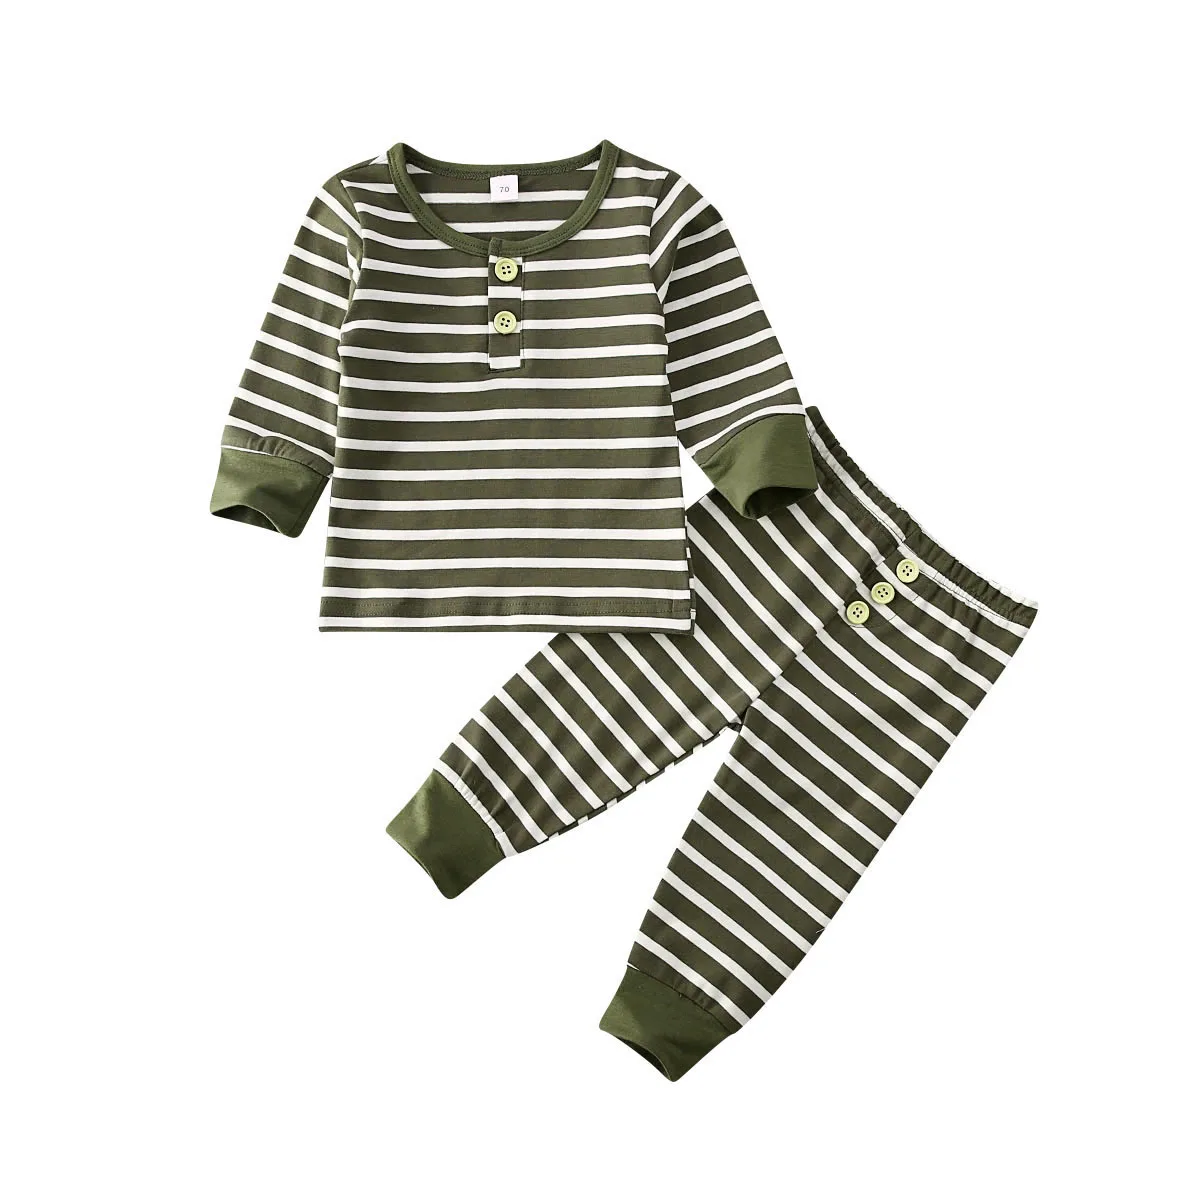 Г. Весенне-осенняя одежда для малышей полосатая футболка с кнопками и длинными рукавами для новорожденных мальчиков и девочек, топы, пуловер, футболка, штаны, комплект со штанами - Цвет: Зеленый